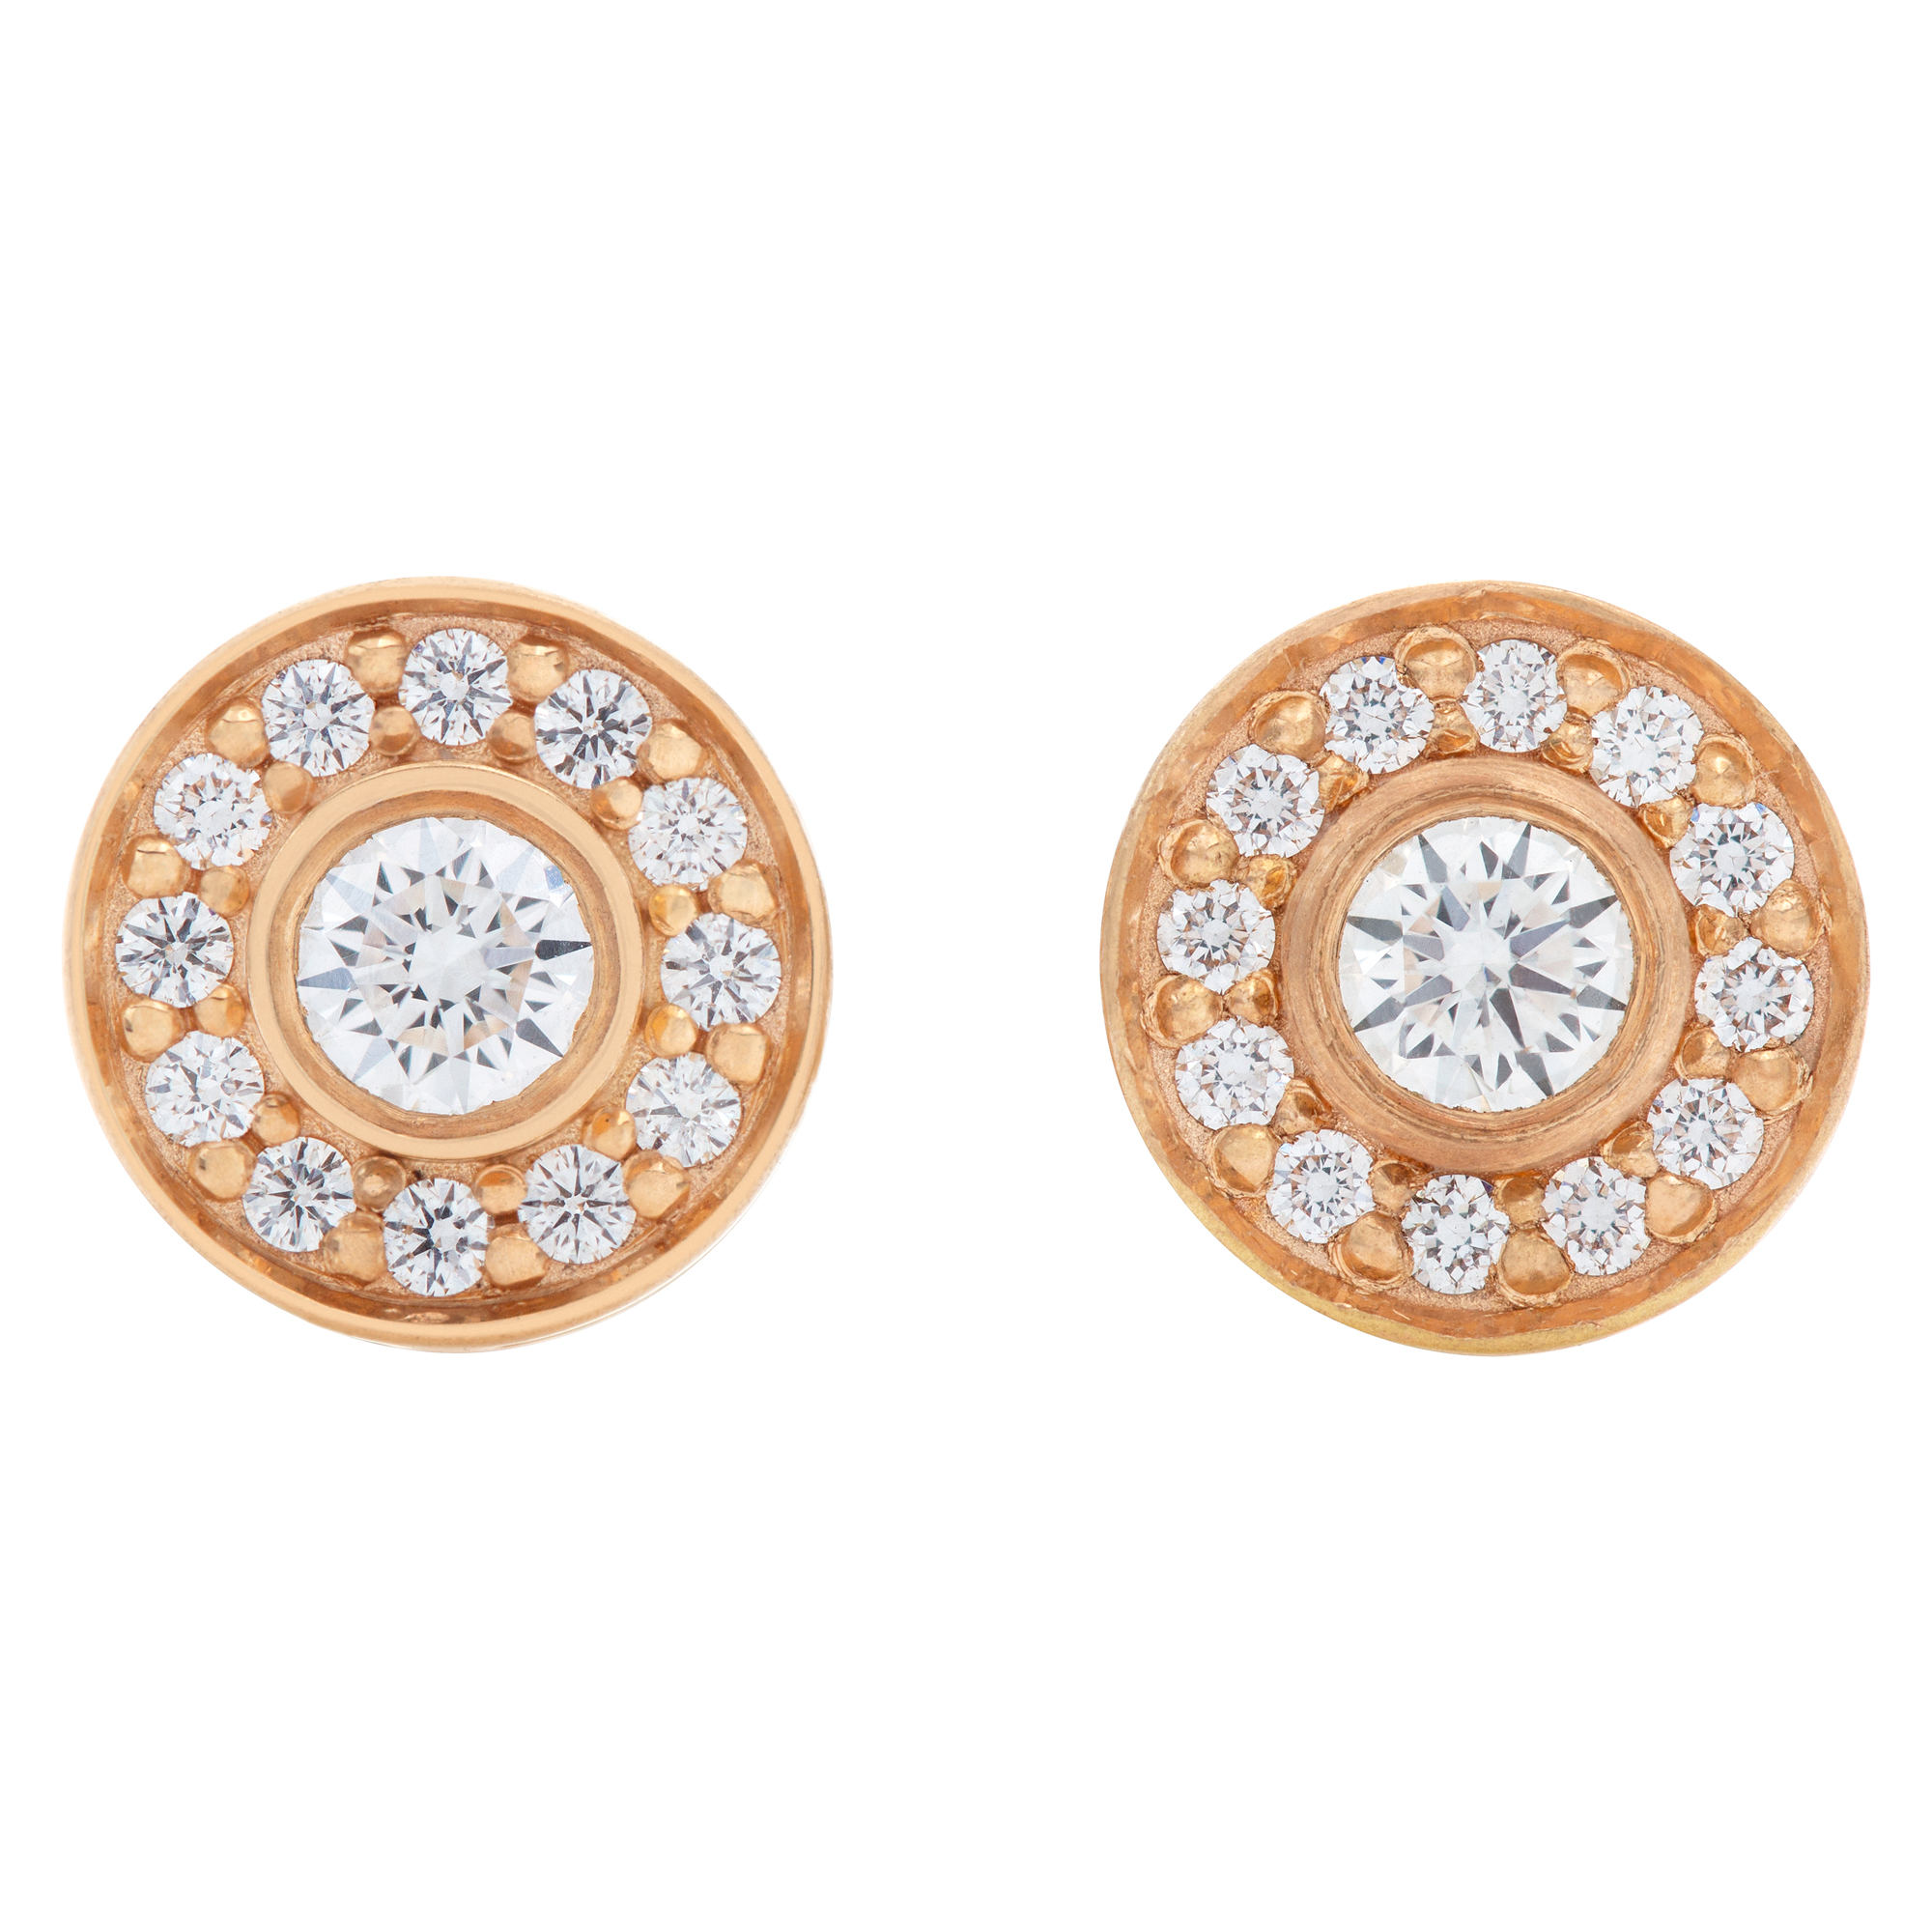 Tiffany & Co. Solste earrings in 18k rose gold